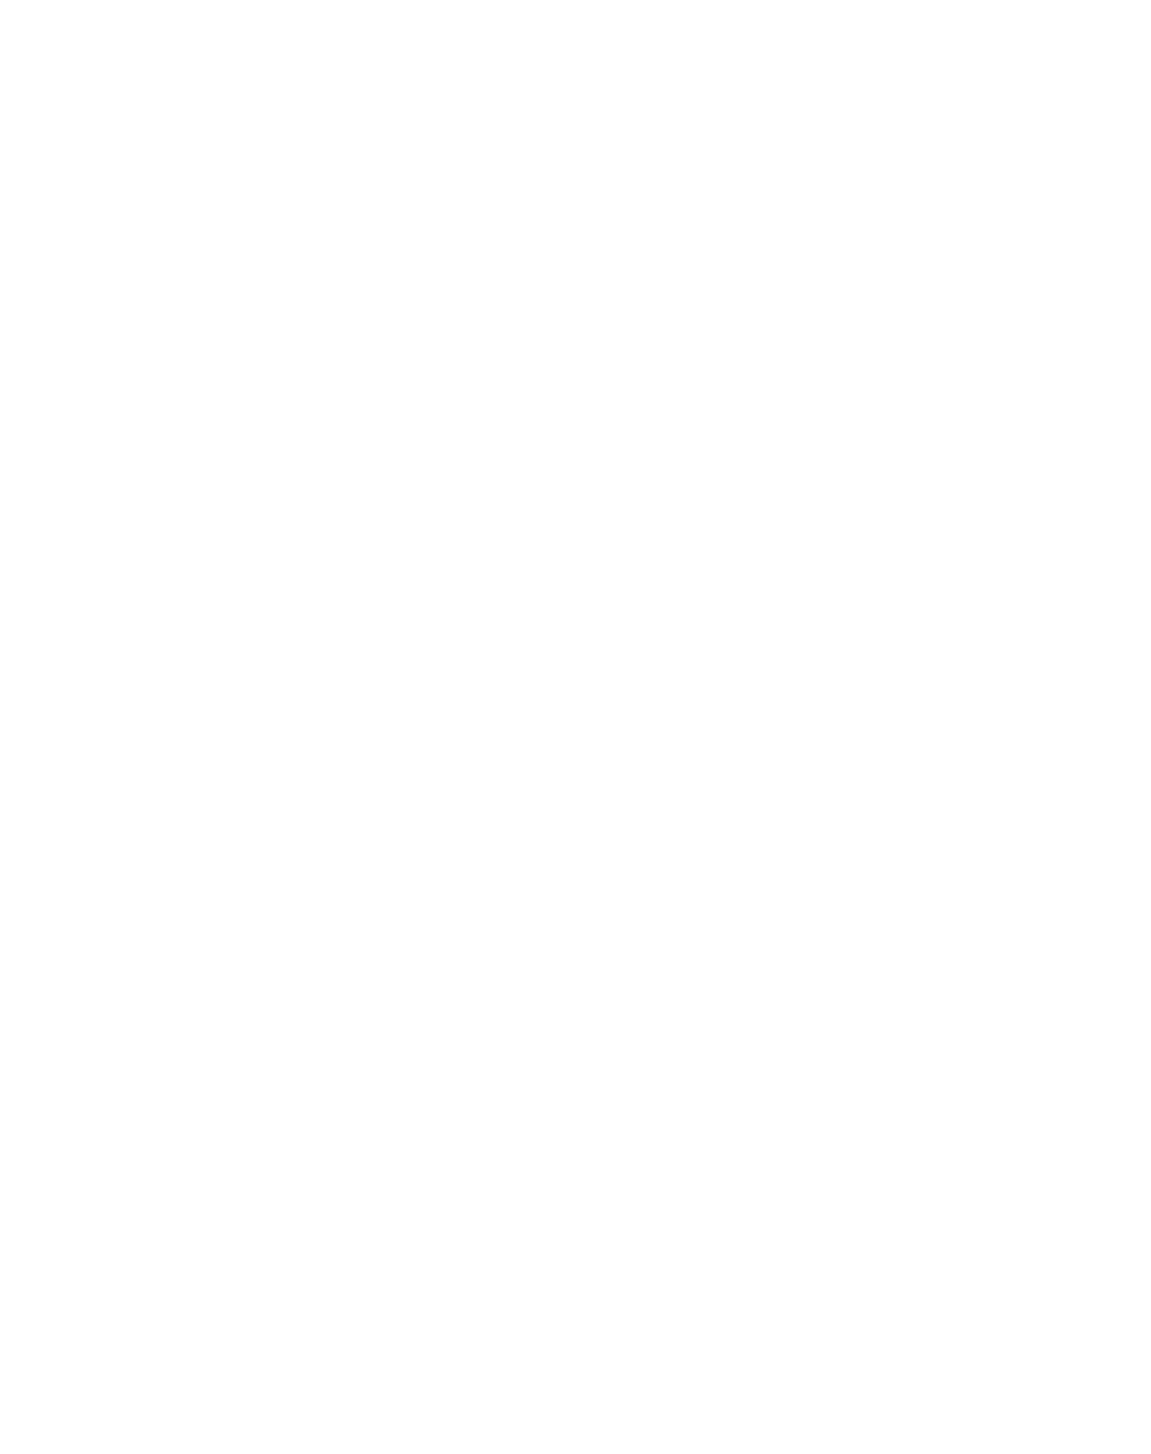 www.HRMstyle.com